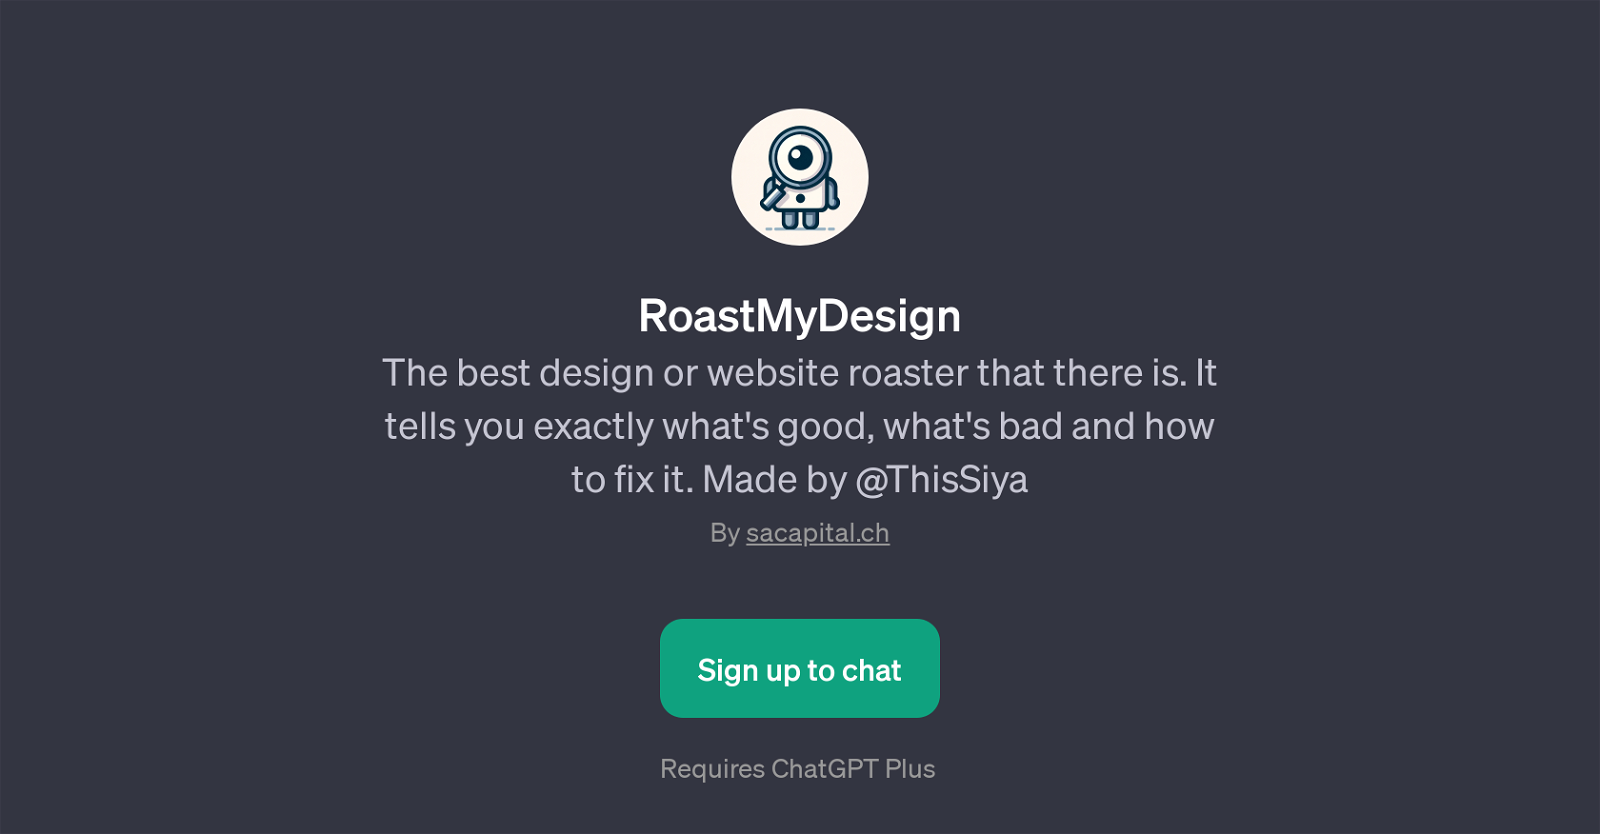 RoastMyDesign website